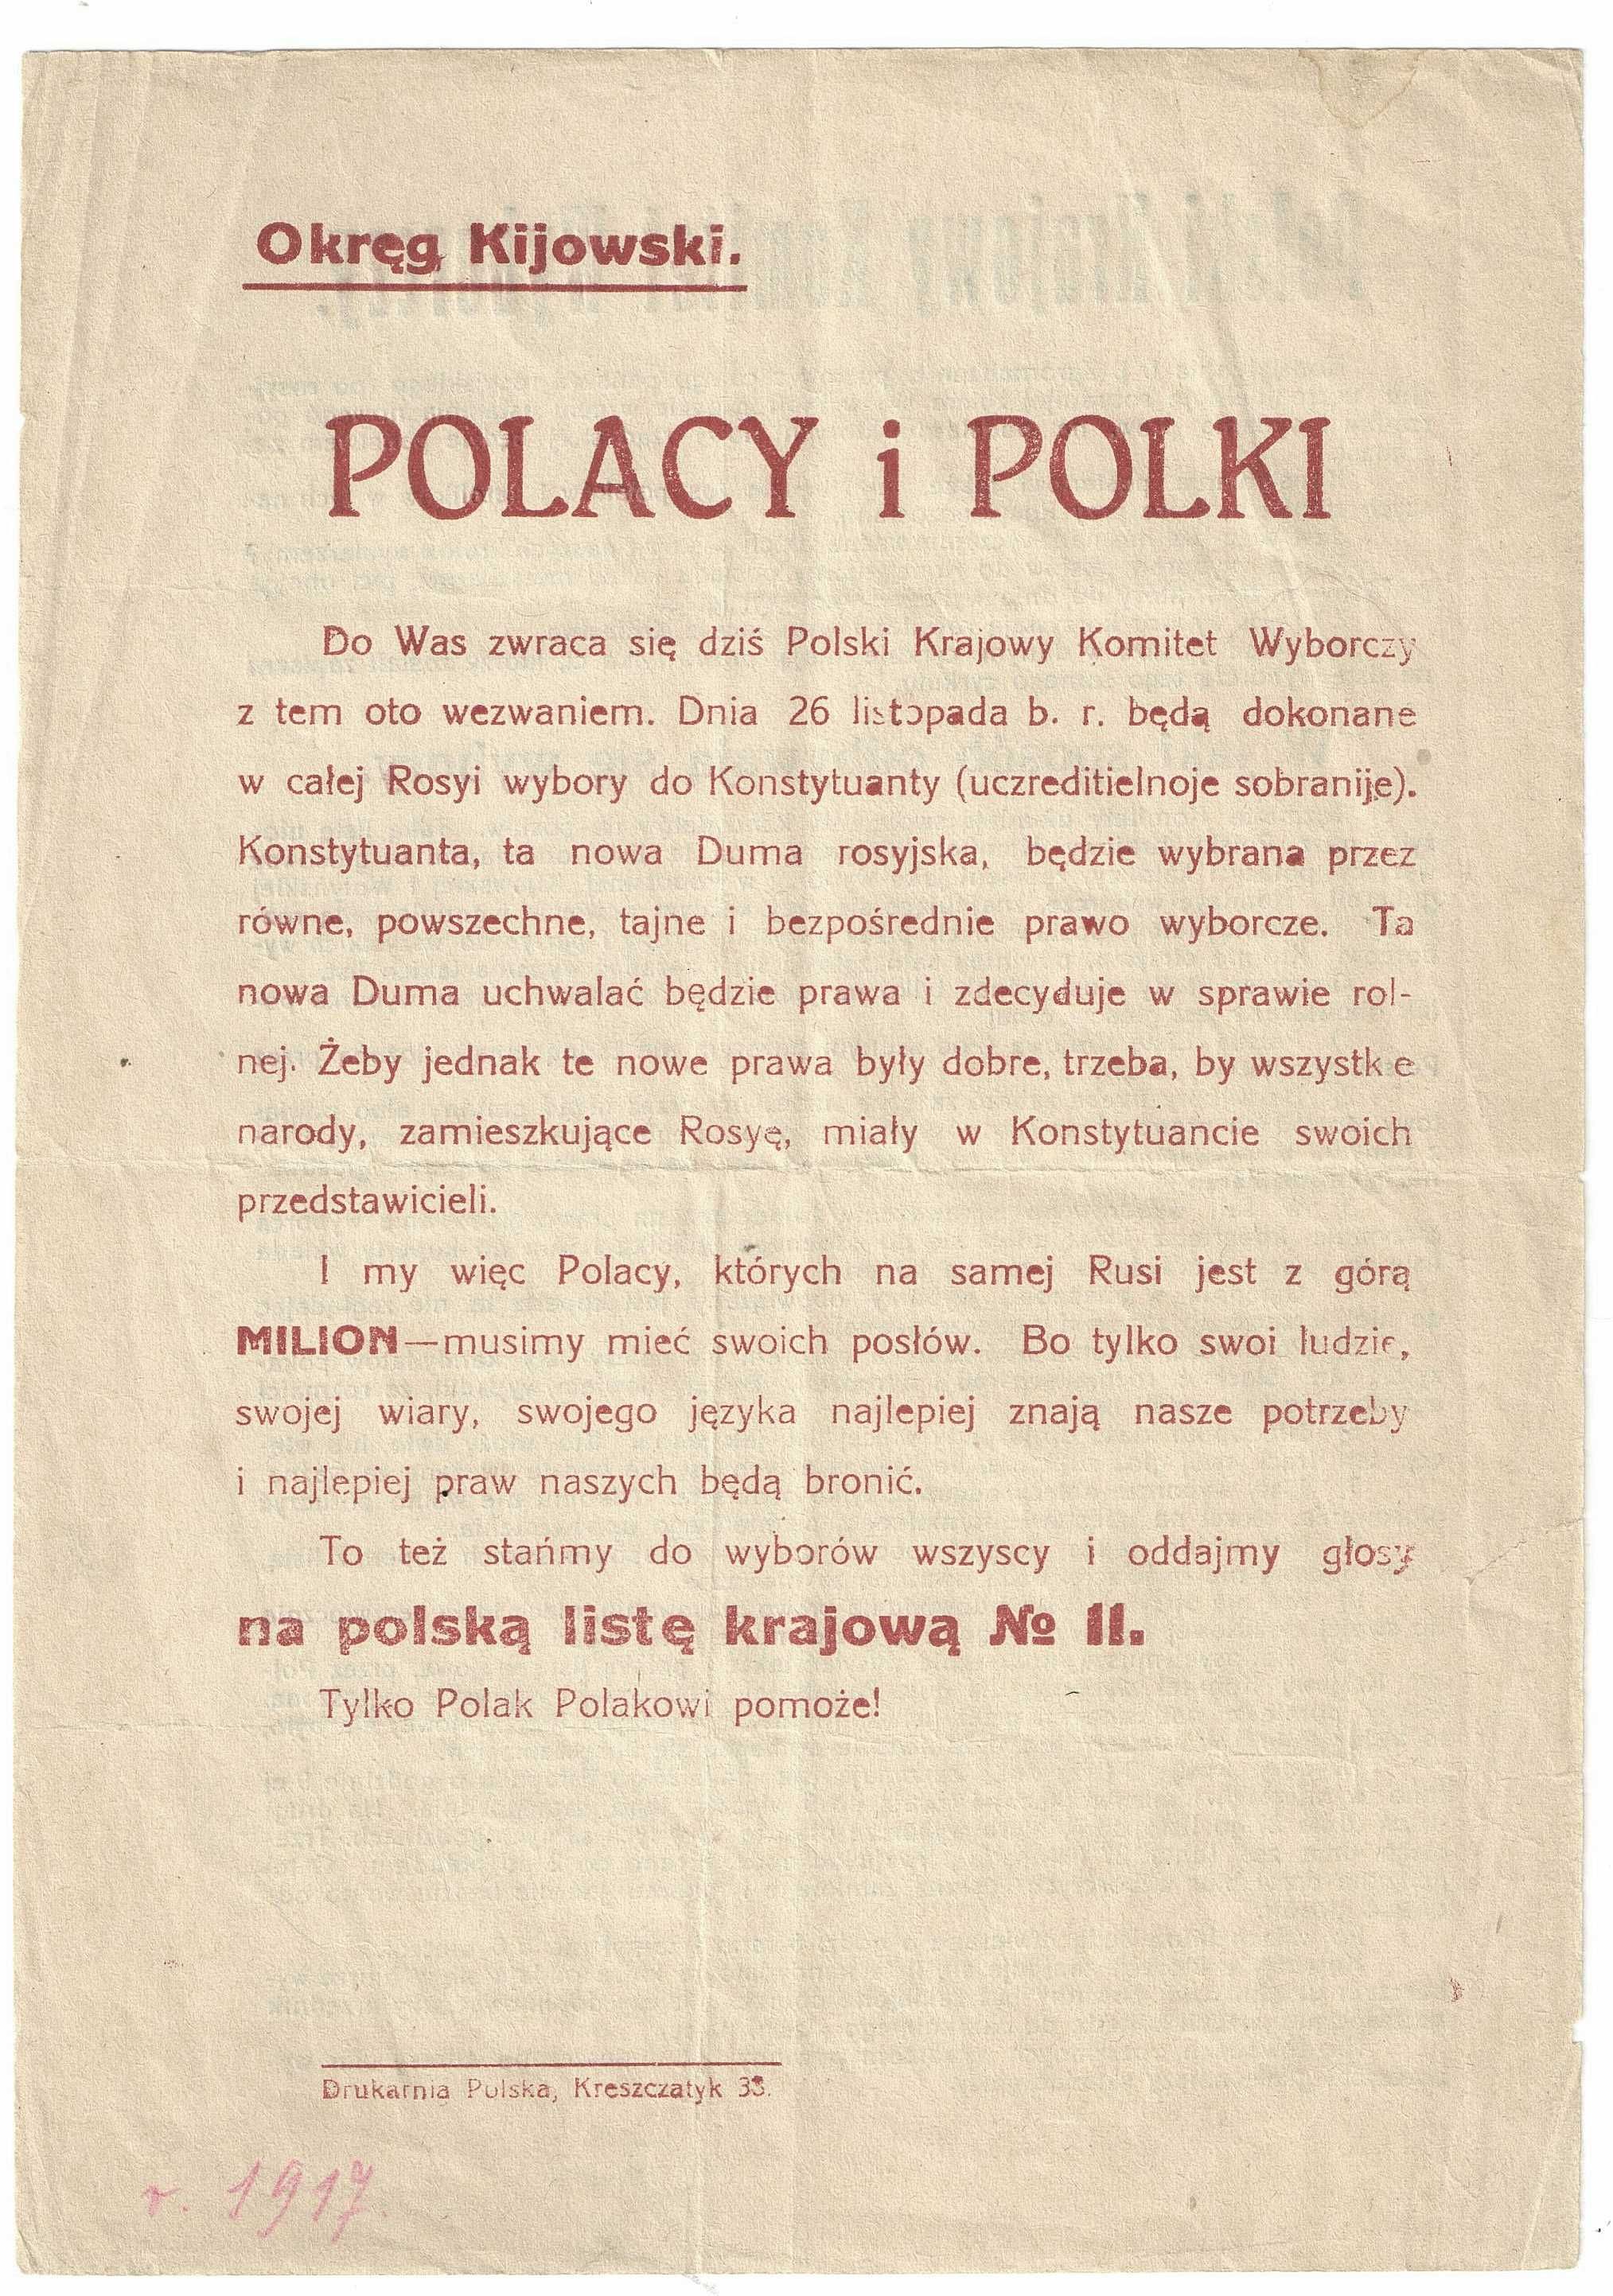 Odezwa - polska lista krajowa - do Polek i Polaków - 1917 r.